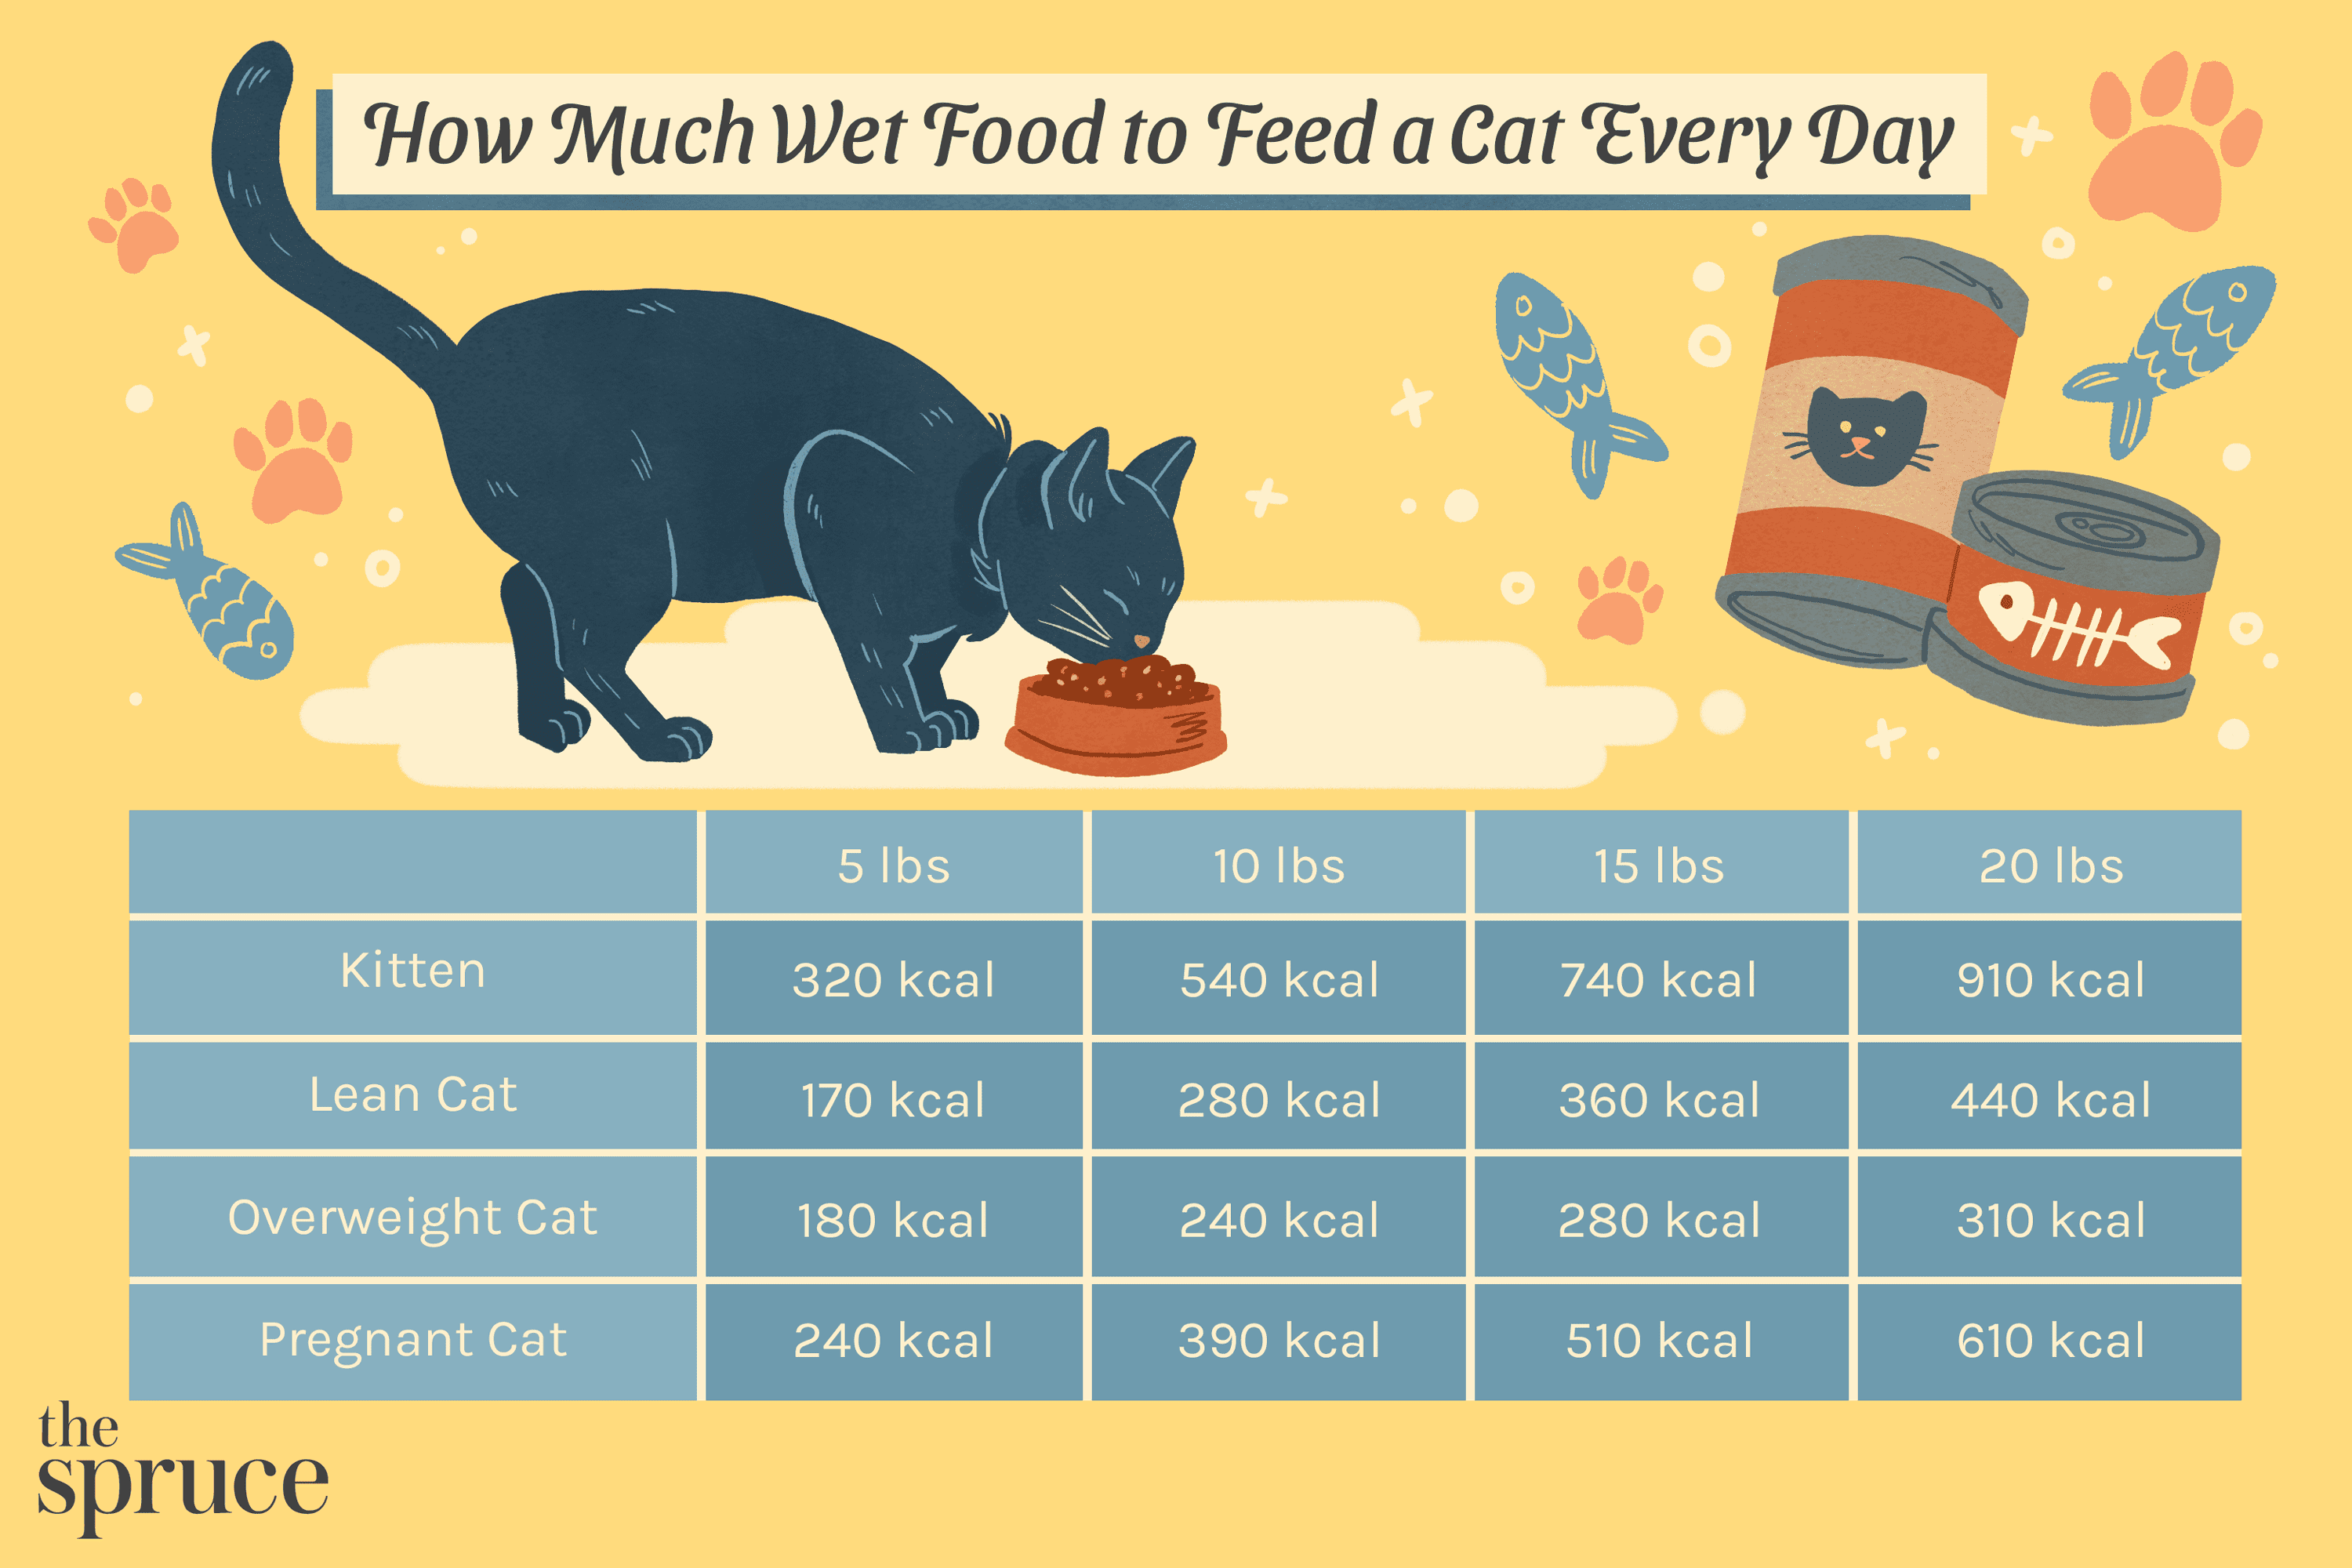 Hur mycket våtfoder att mata en katt varje dag